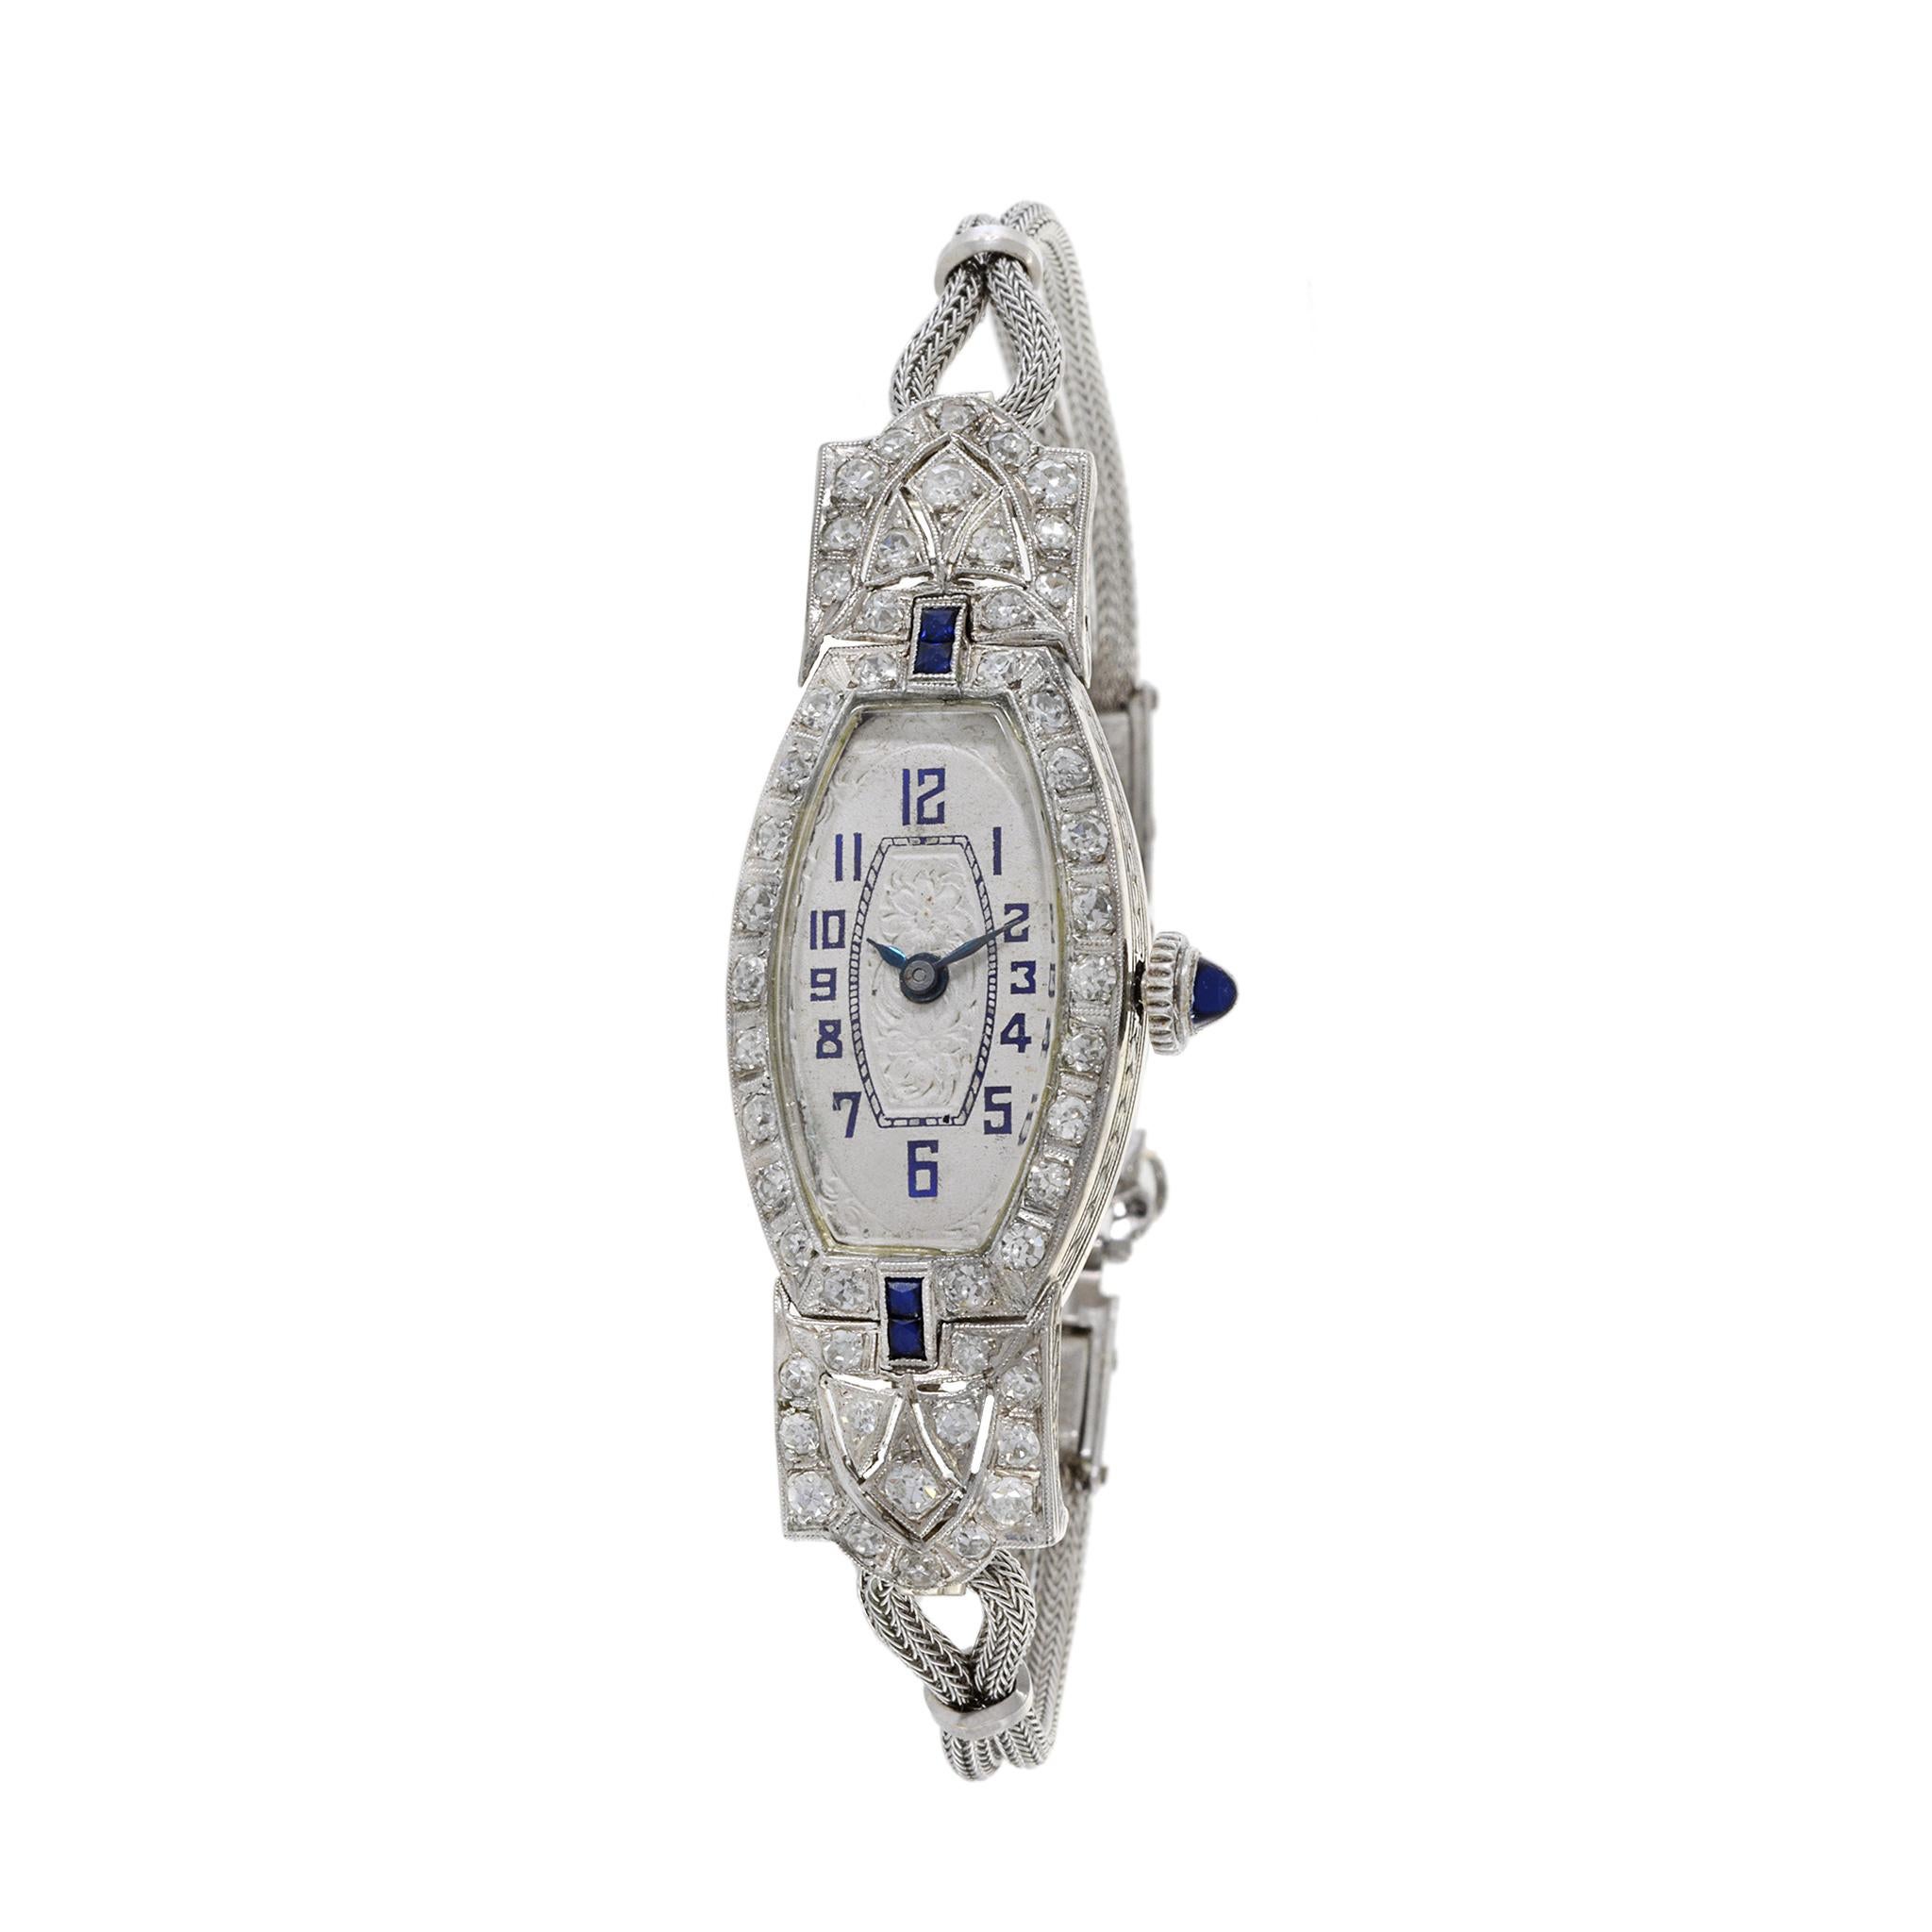 Dies ist eine elegante Cocktailuhr aus Platin aus den 1950er Jahren mit Diamanten und Saphiren. Die Uhr hat ein Gesamtgewicht der Diamanten von 1,50 TDW. Die Uhr wird von einem hochwertigen Schweizer Uhrwerk mit 17 Juwelen angetrieben. 

Das Gehäuse